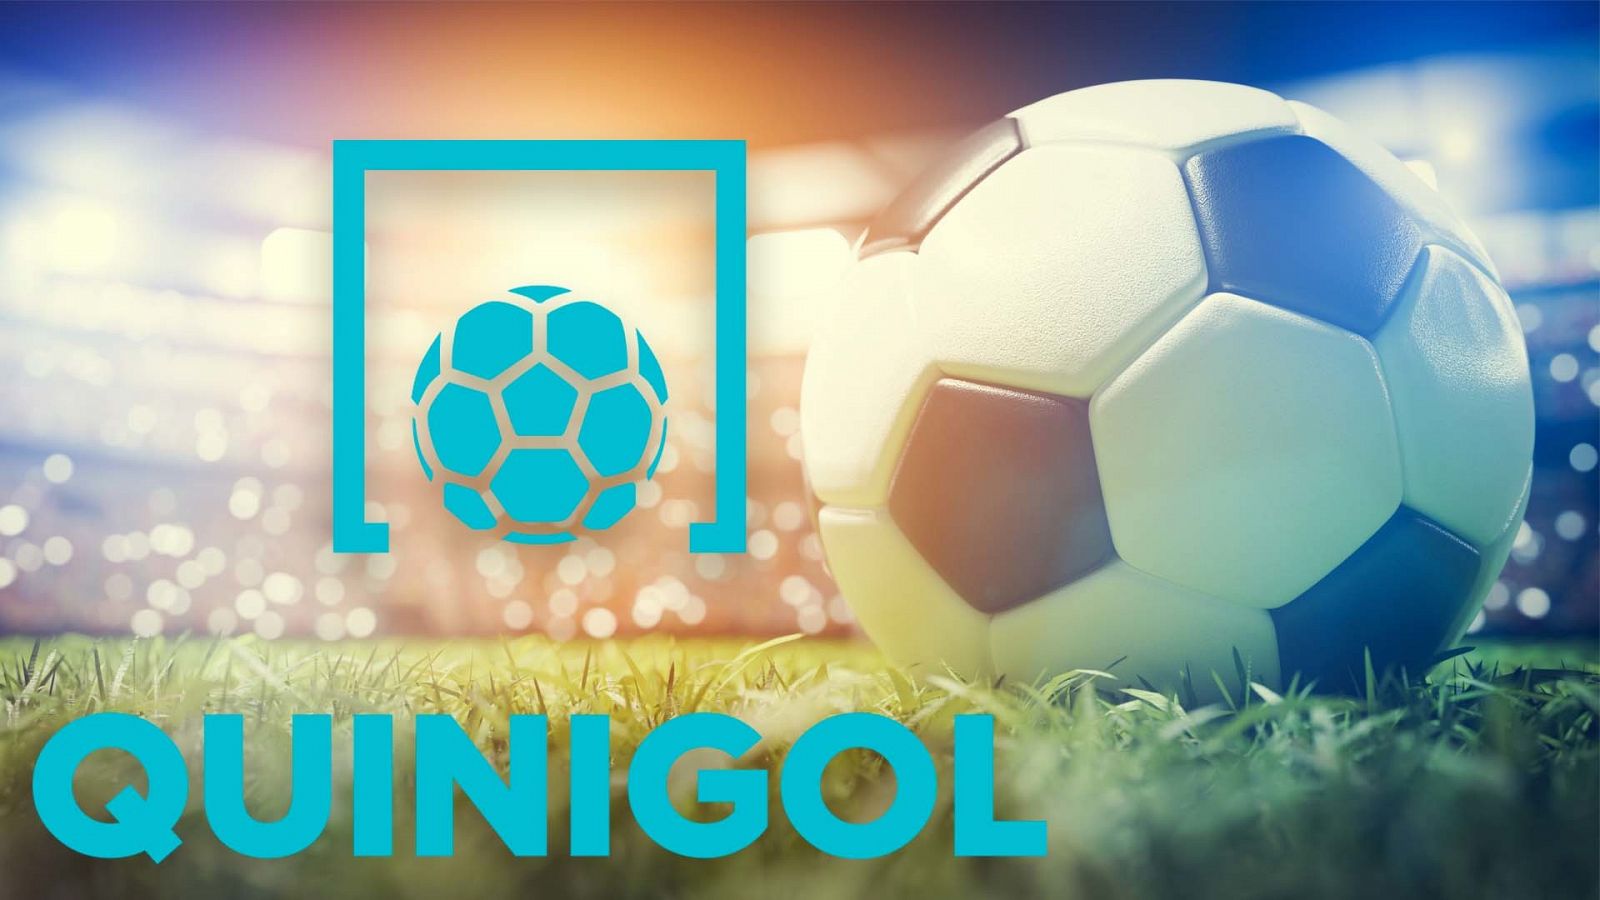 Un balón de fútbol sobre el césped del campo y al lado, el logo de Qunigol en azul celeste